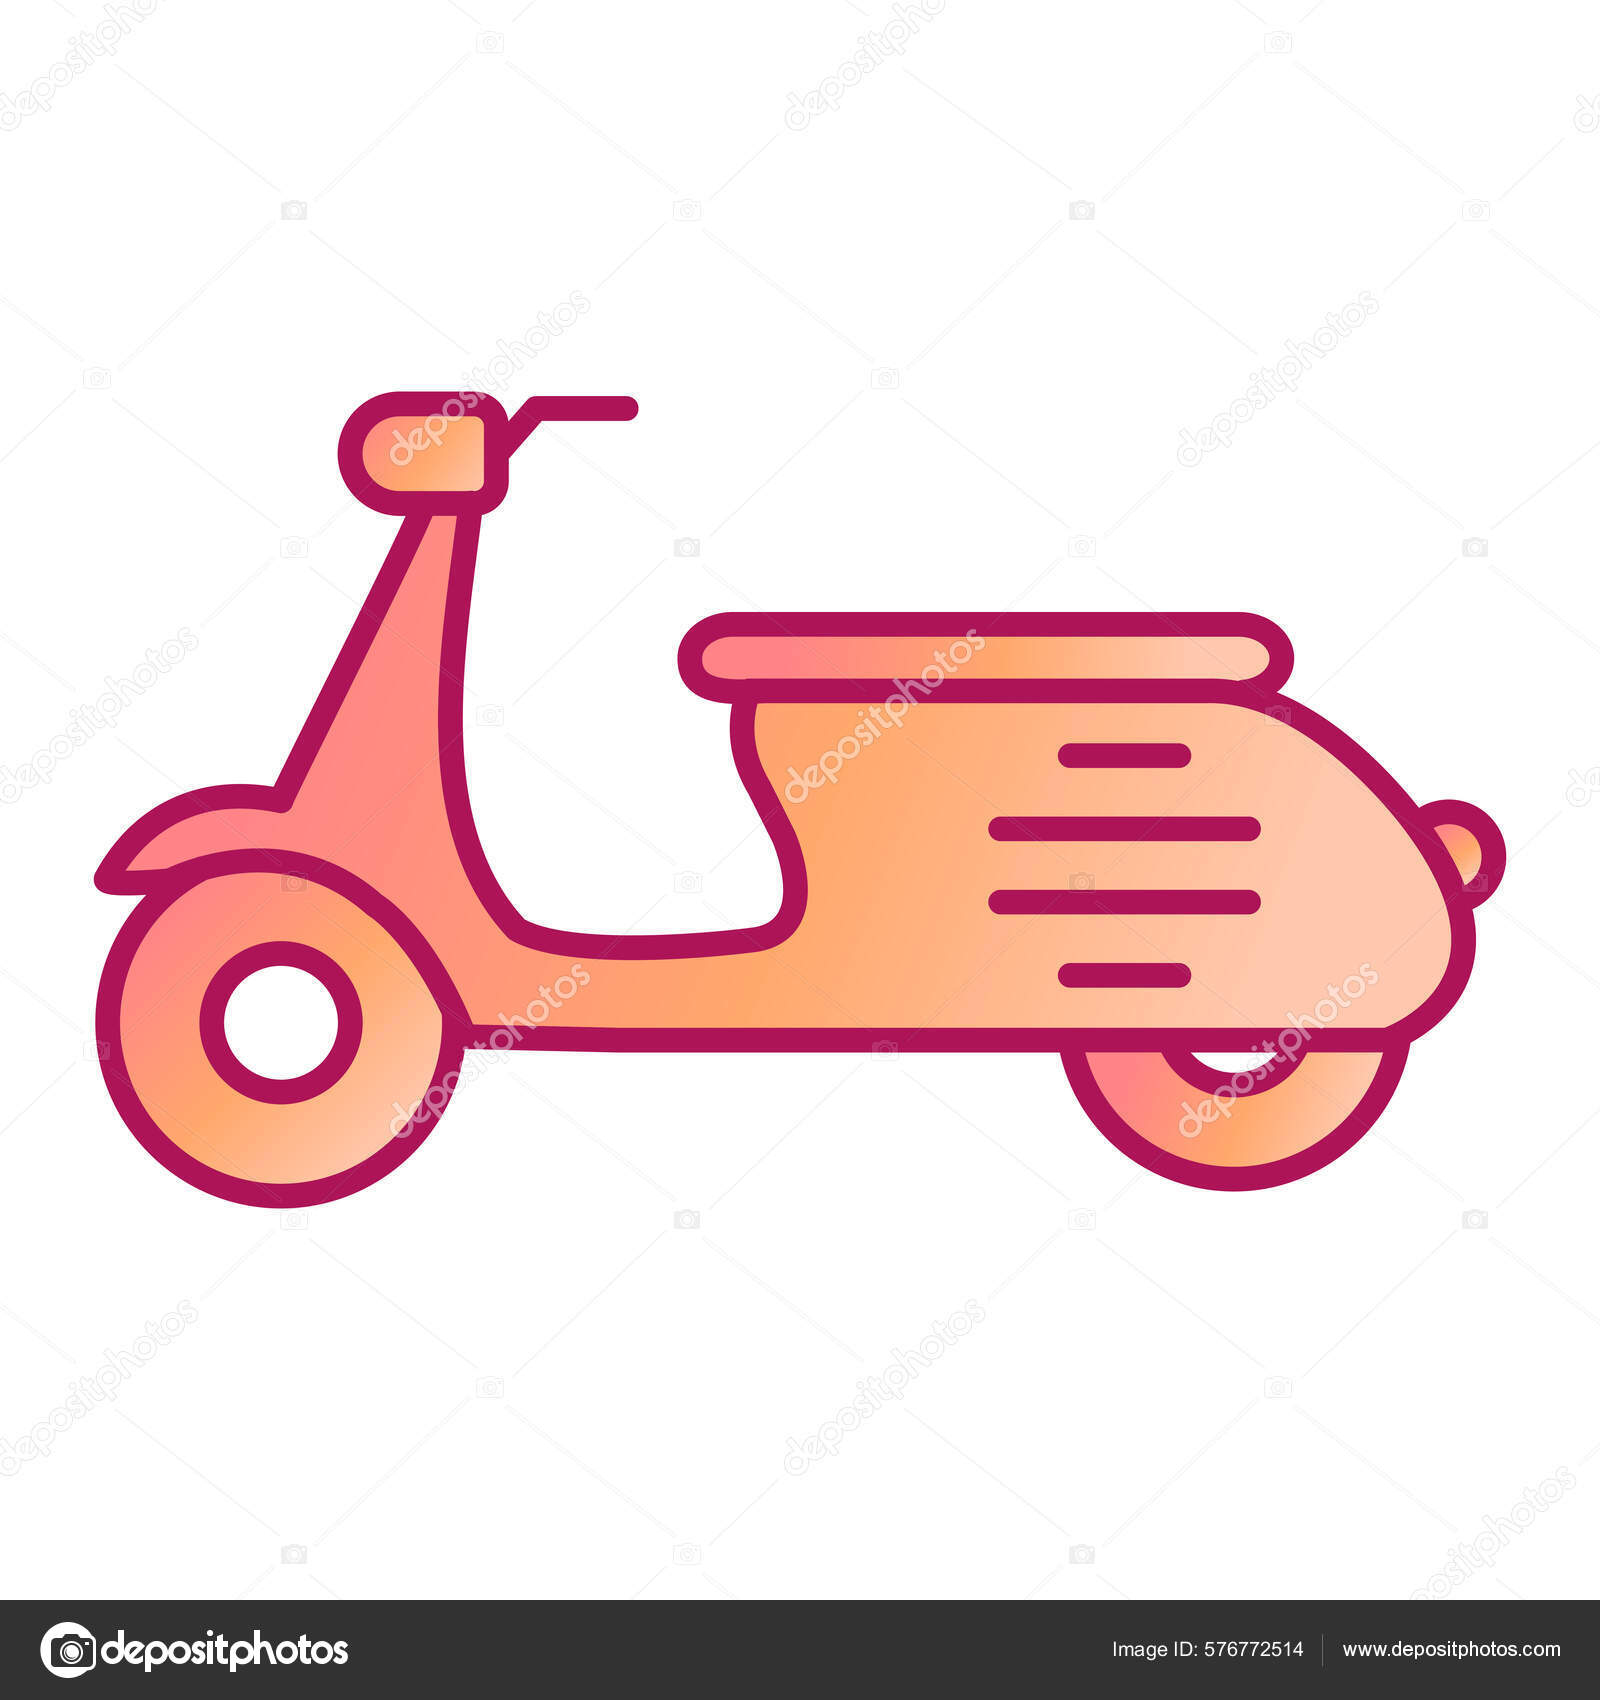 Ilustração Moderna Do Desenho Animado Da Scooter Da Motocicleta